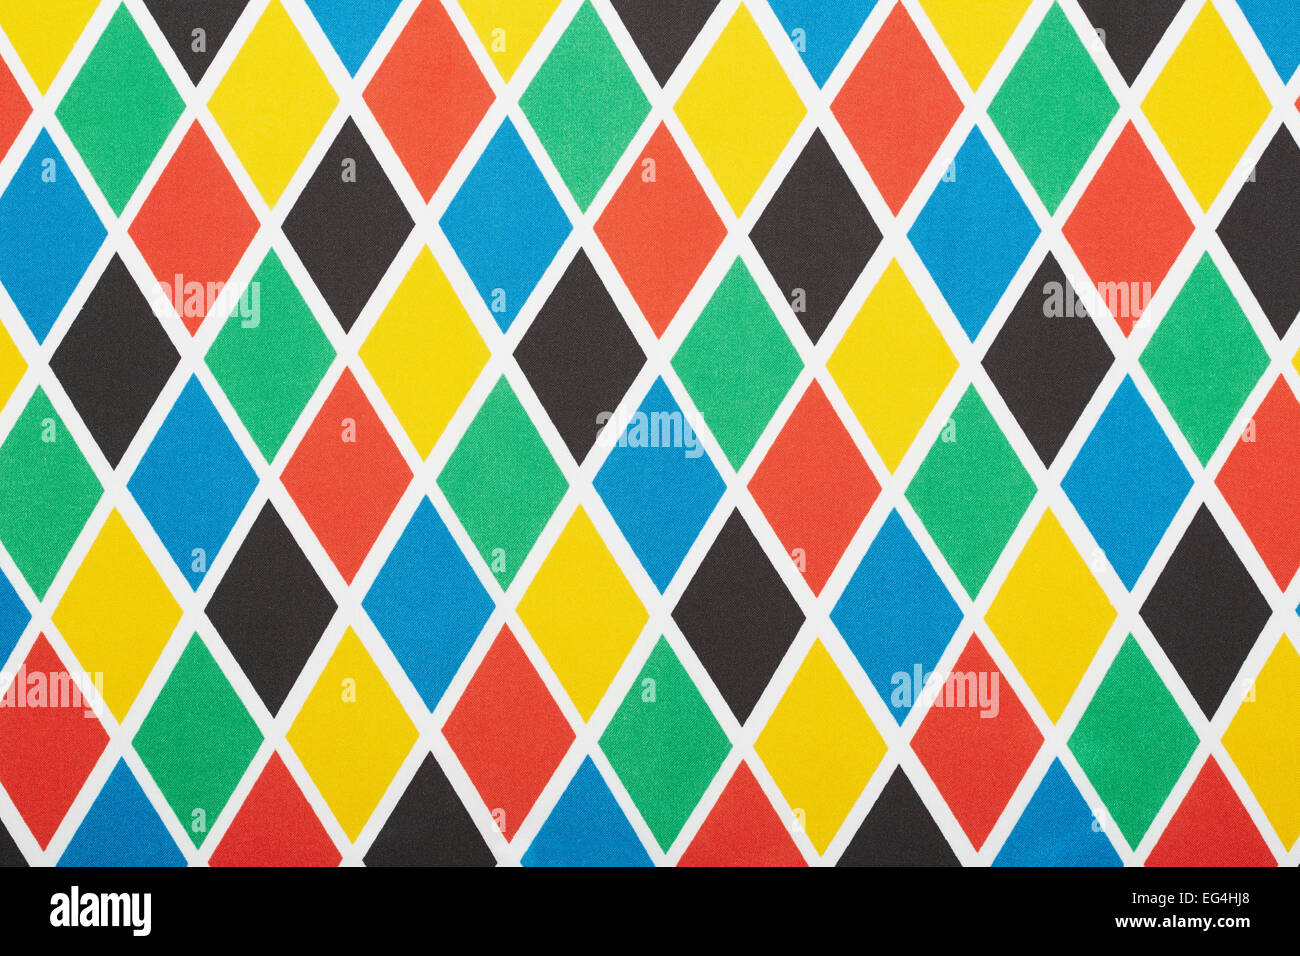 Arlequín colorido patrón romboidal, textura del fondo Foto de stock